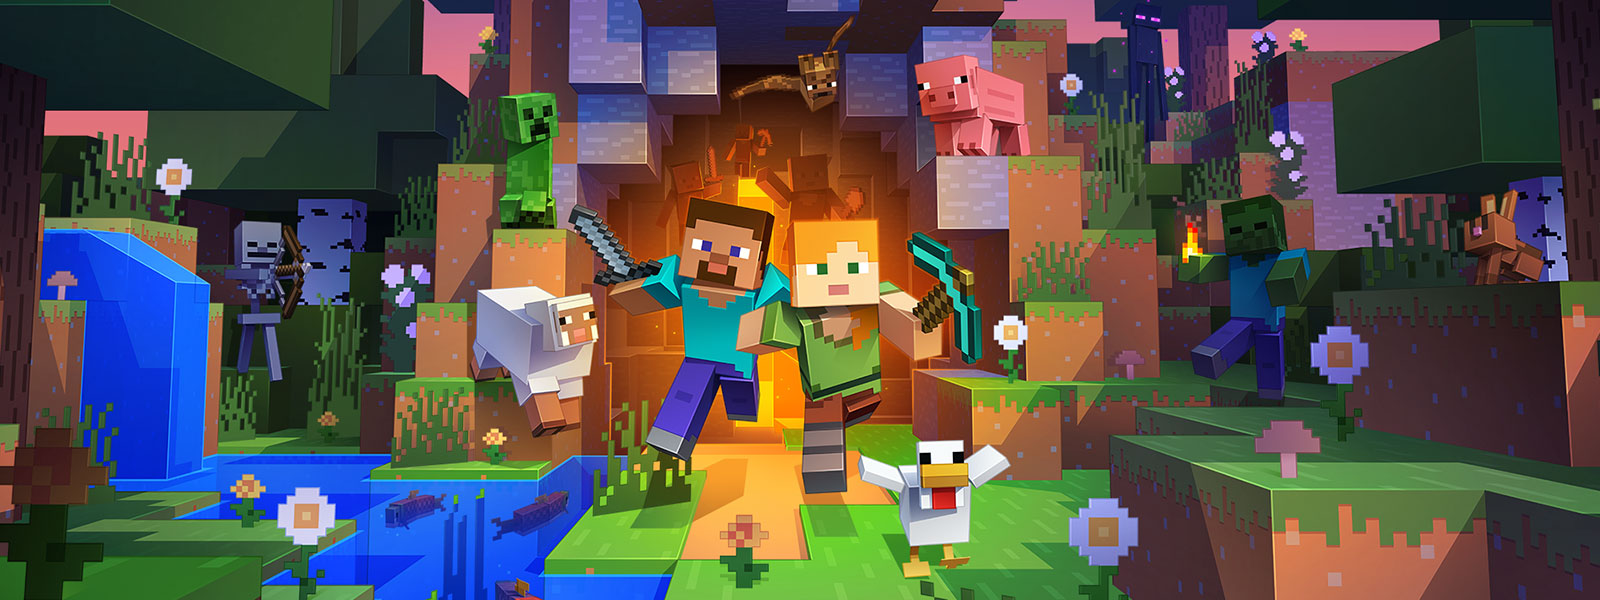 Duas personagens a saírem de um túnel com muitas criaturas do mundo do Minecraft